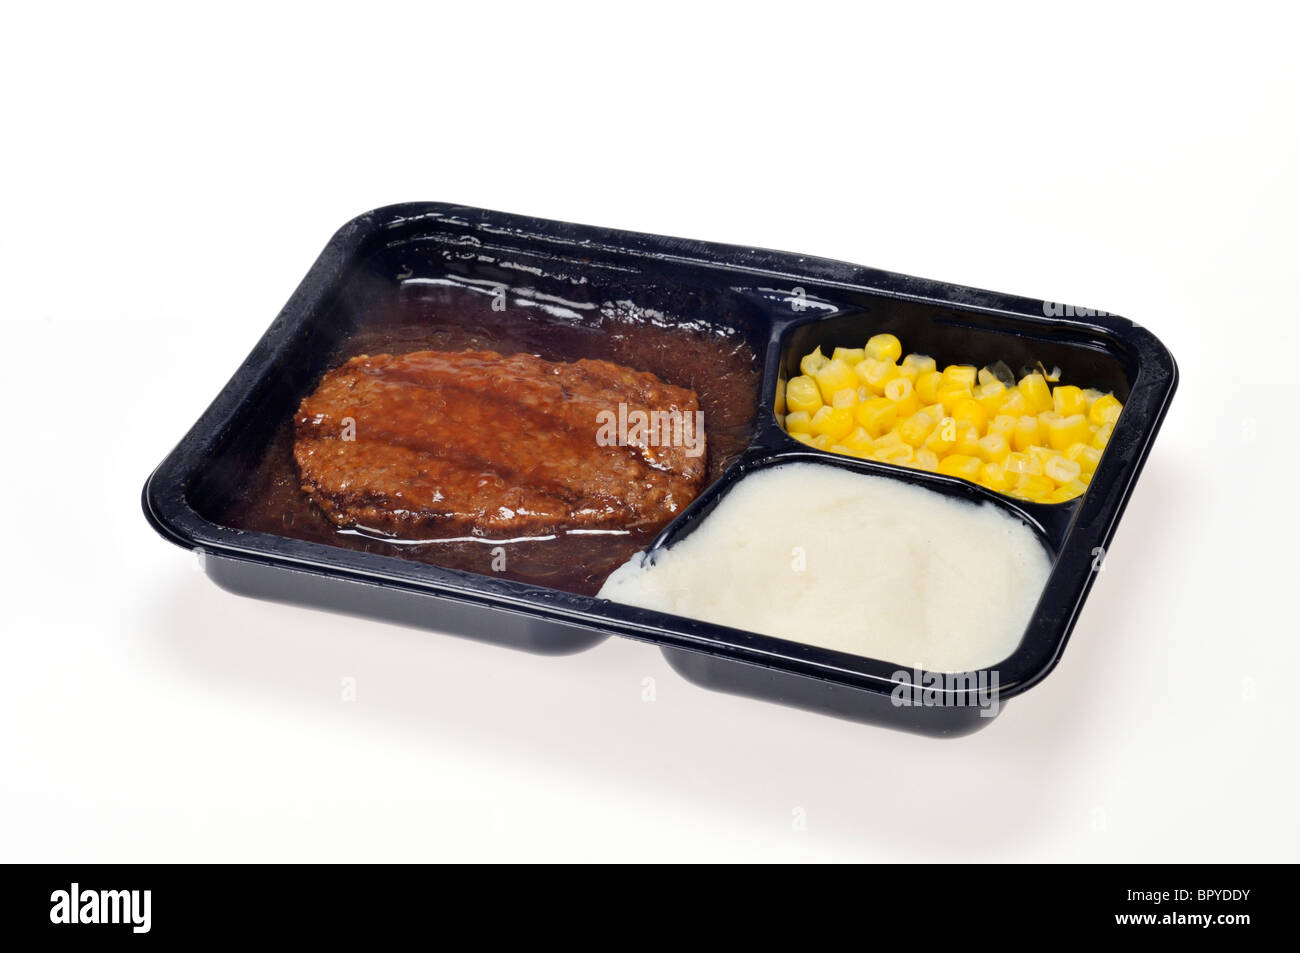 A gekocht Essen aus der Mikrowelle Tv-Dinner, Fertiggerichte Salisbury Steak,  Mais und Kartoffelpüree mit Soße auf weißem Hintergrund, Ausschnitt  Stockfotografie - Alamy